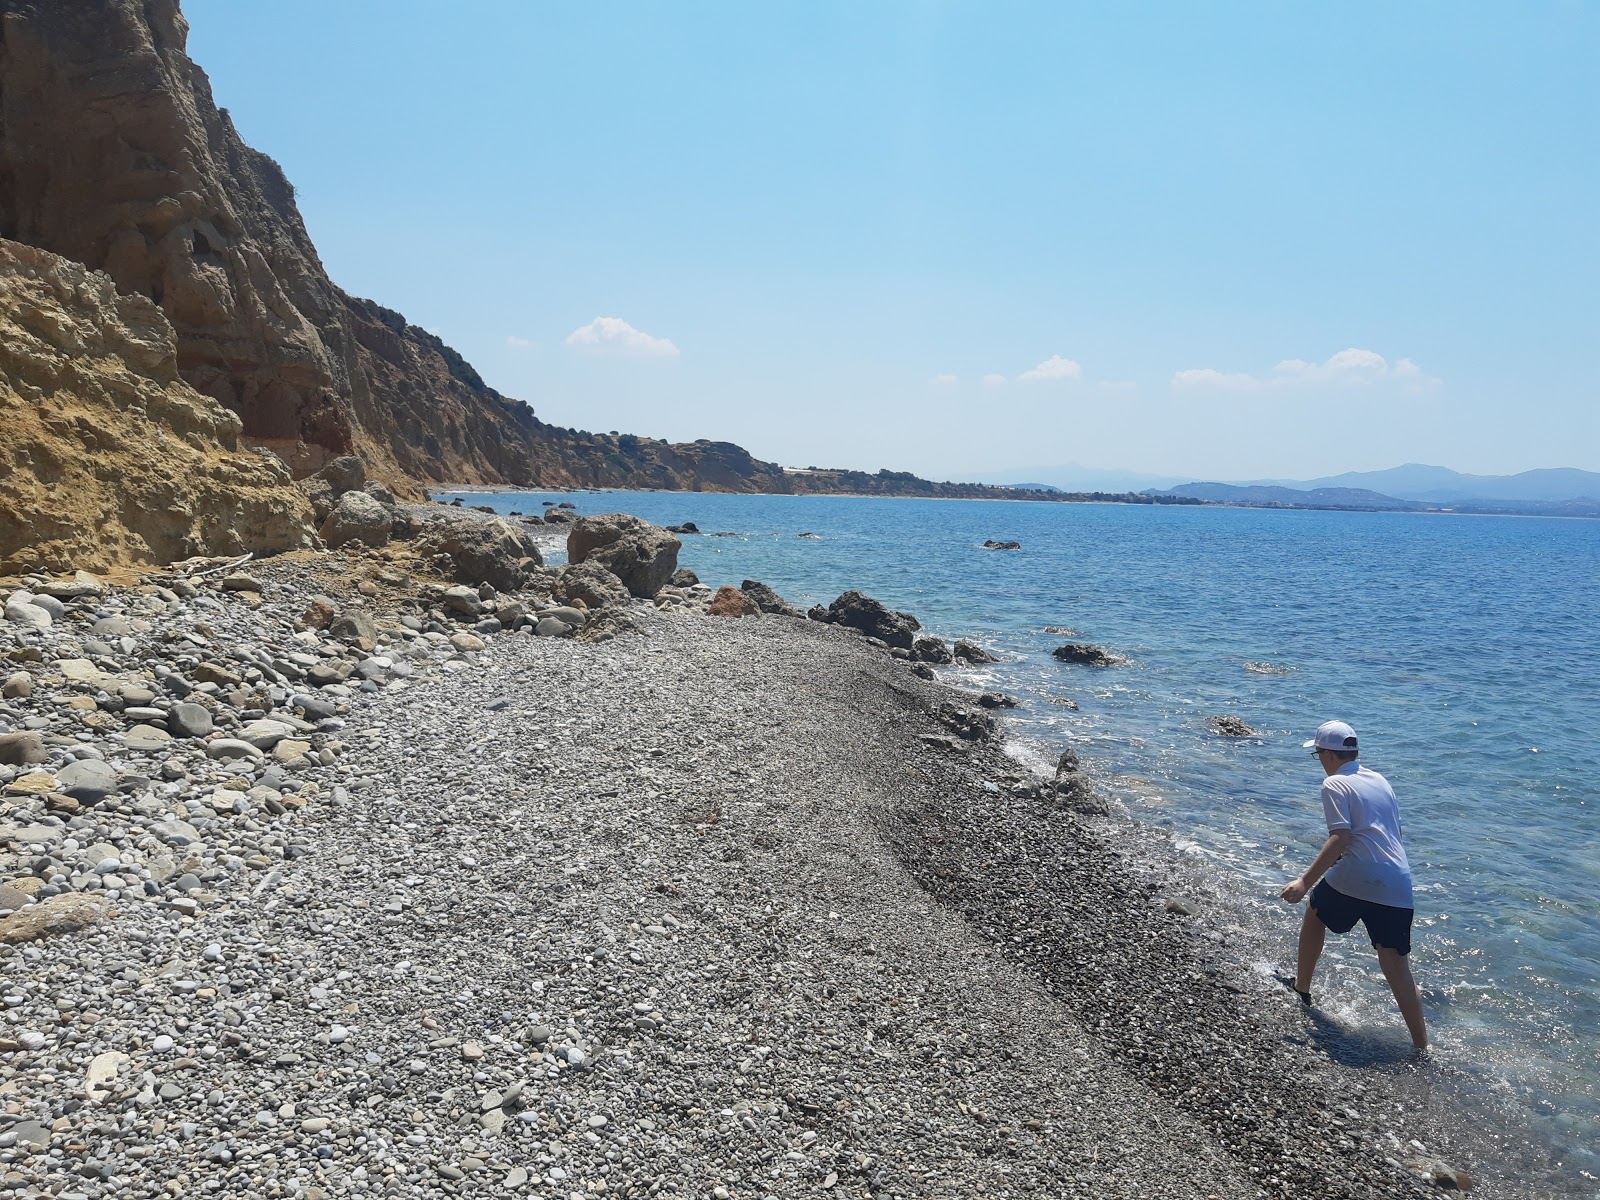 Kakoskala beach'in fotoğrafı geniş plaj ile birlikte